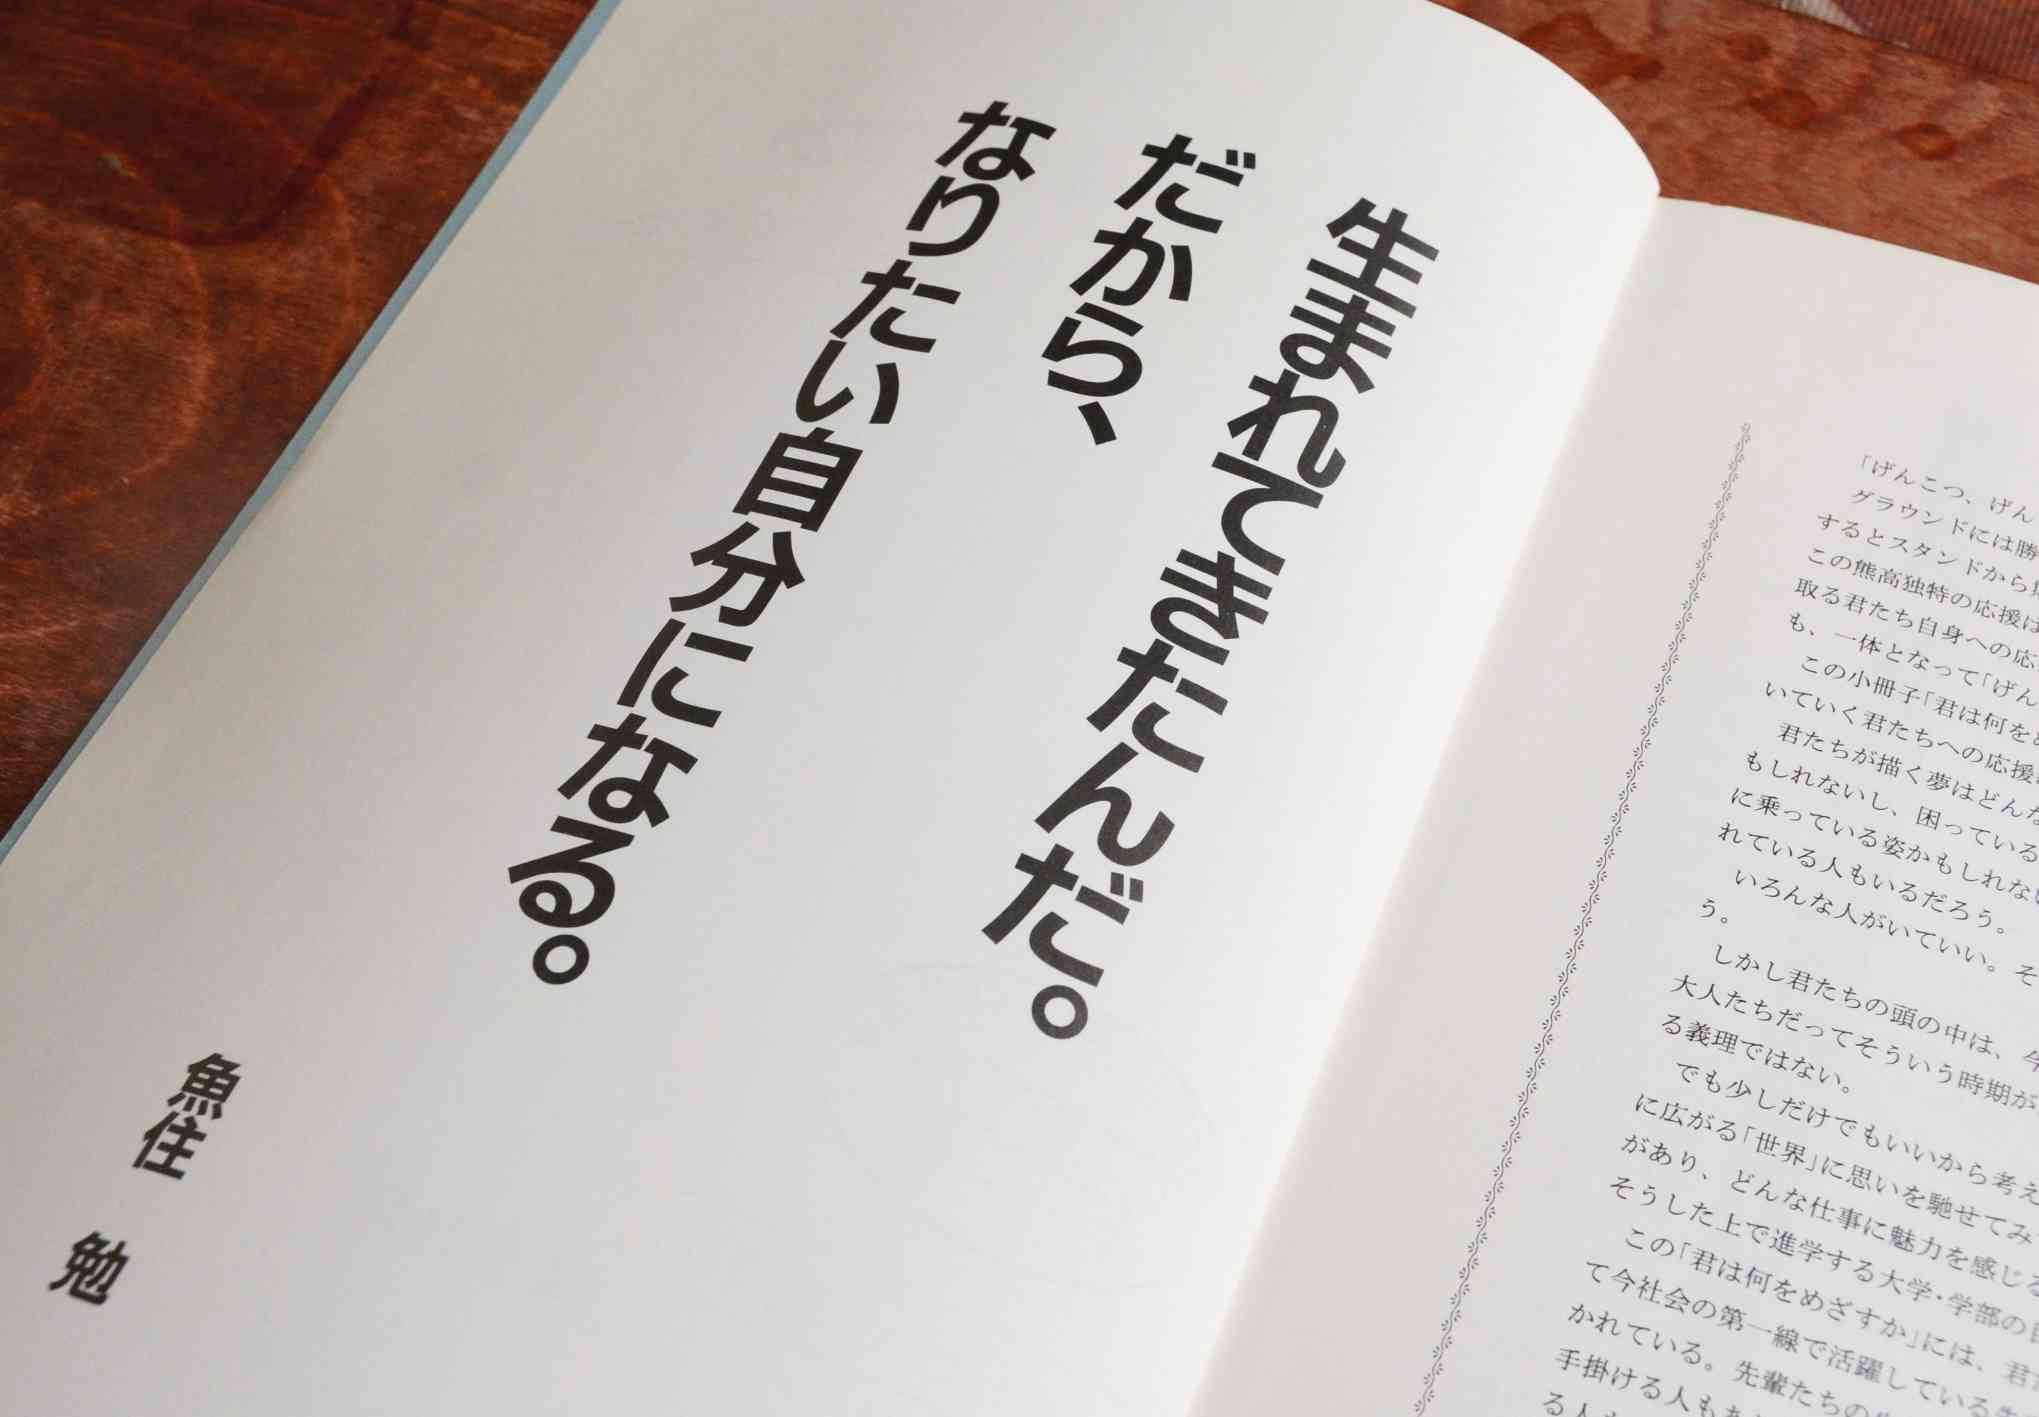 熊本高のキャリアブック「君は何をめざすか」の巻頭に載った魚住勉さんのキャッチコピー